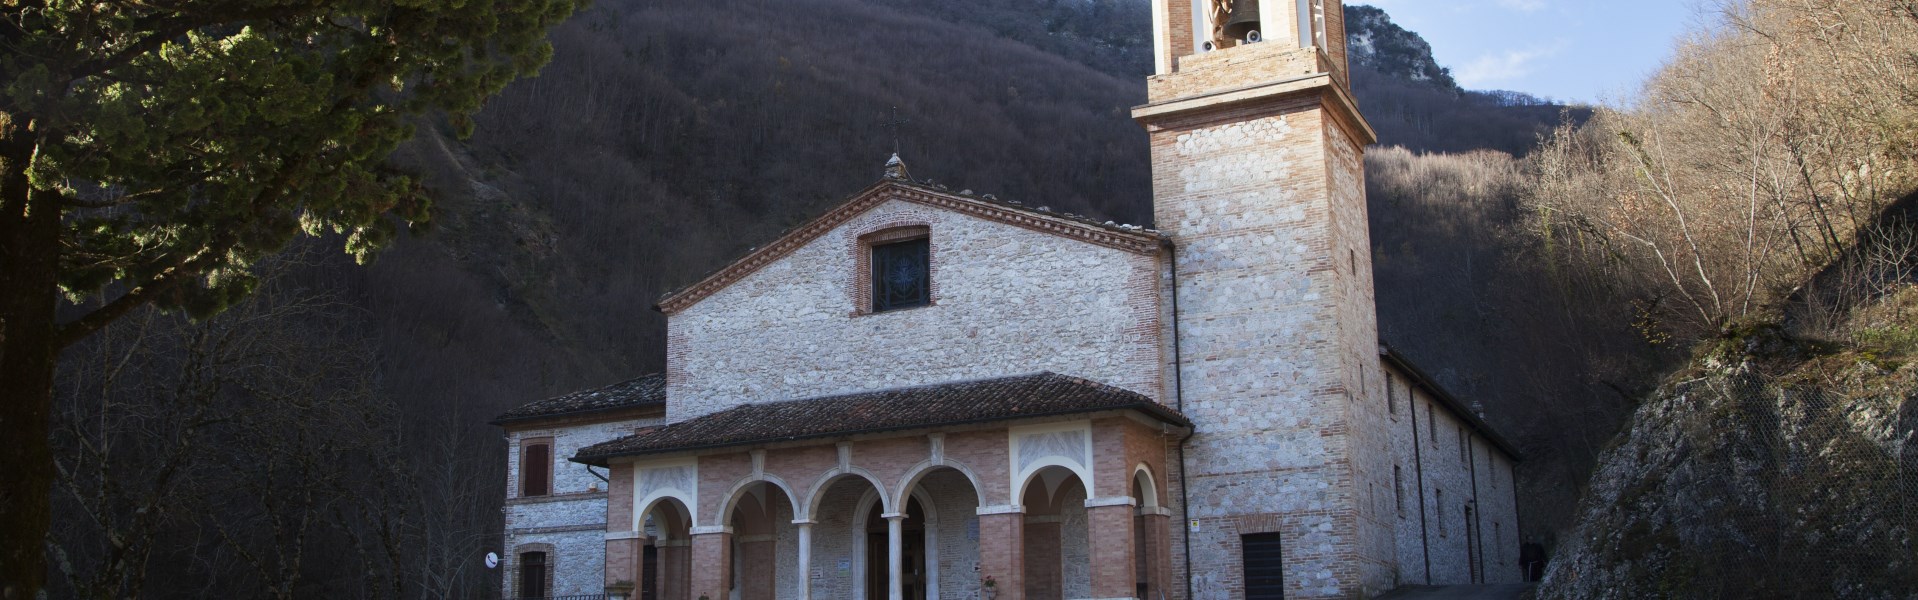 Montefortino - Madonna dell Ambro